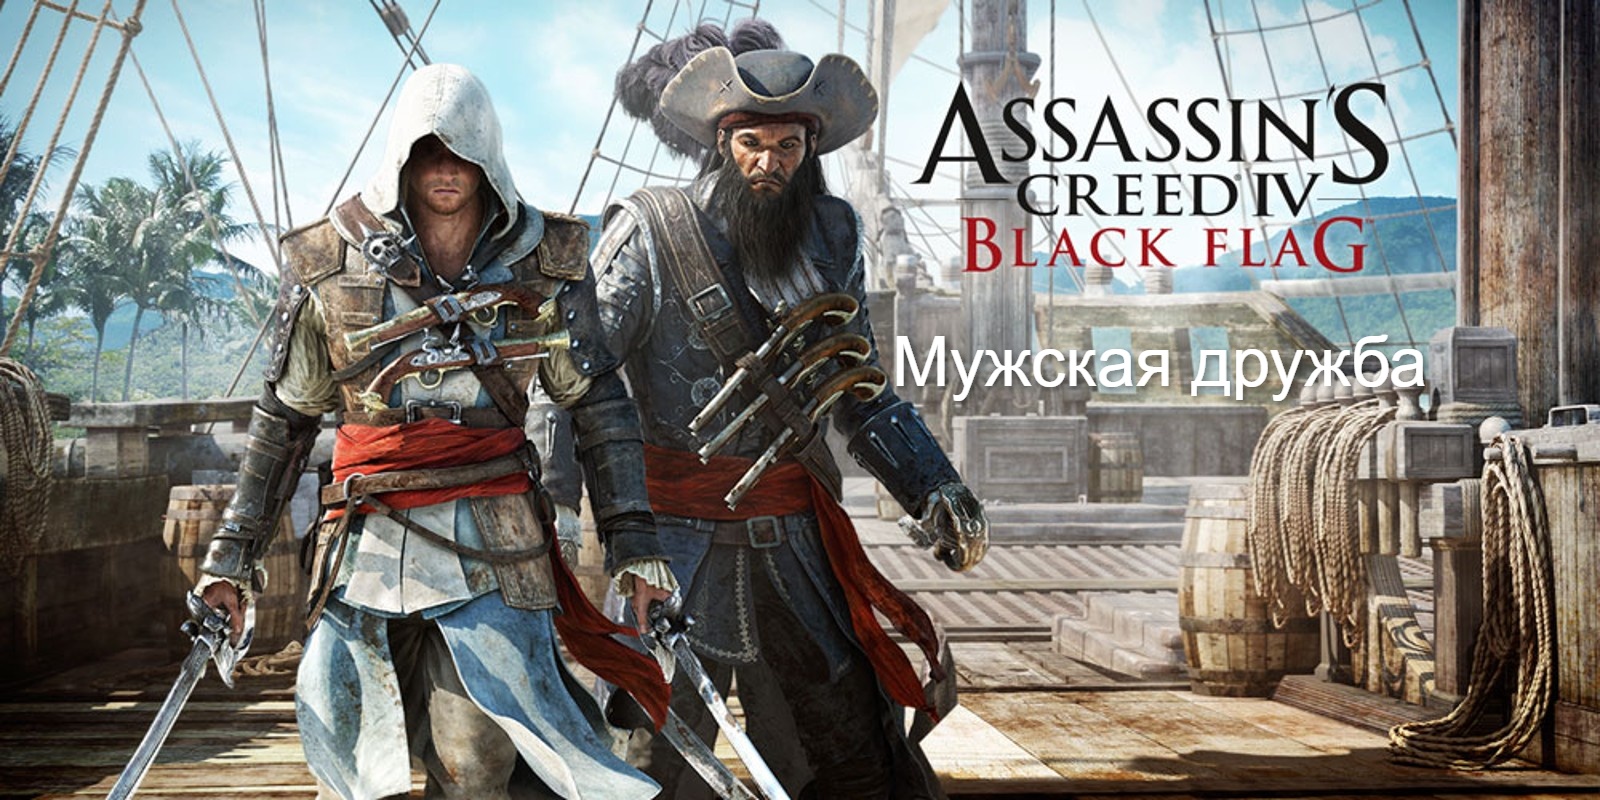 Прохождение Assassin's Creed 4- Black Flag (Чёрный флаг). Мужская дружба.mp4